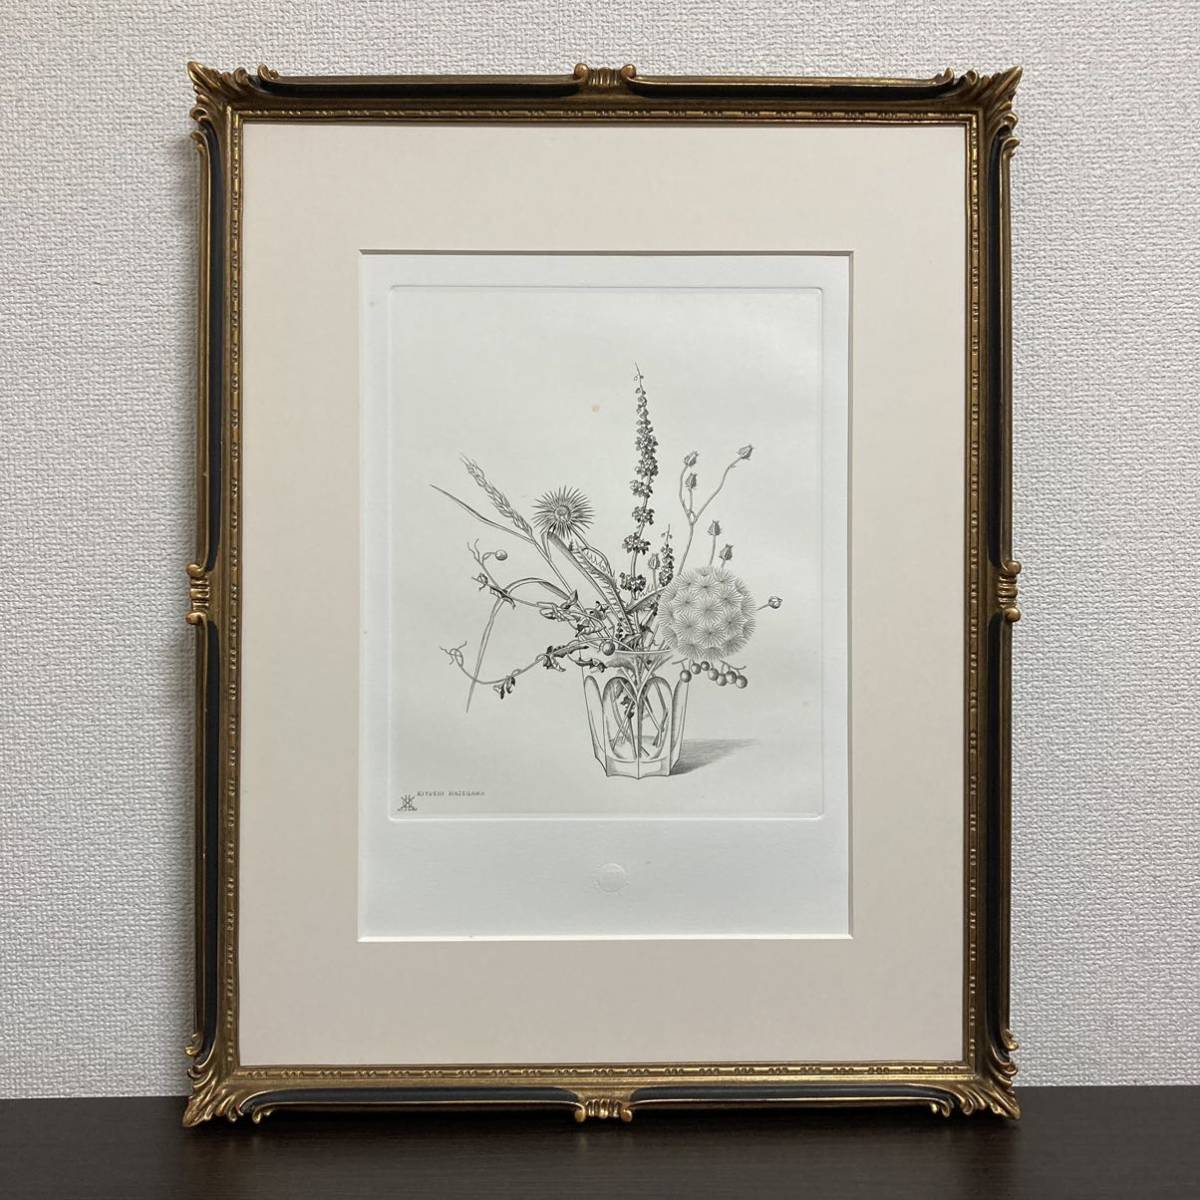 [الأصالة مضمونة] زهور برية كيوشي هاسيغاوا في كوب محفورة بإطار مطبوع على شكل لوحة نحاسية, عمل فني, مطبعة, طباعة لوحة نحاسية, النقش